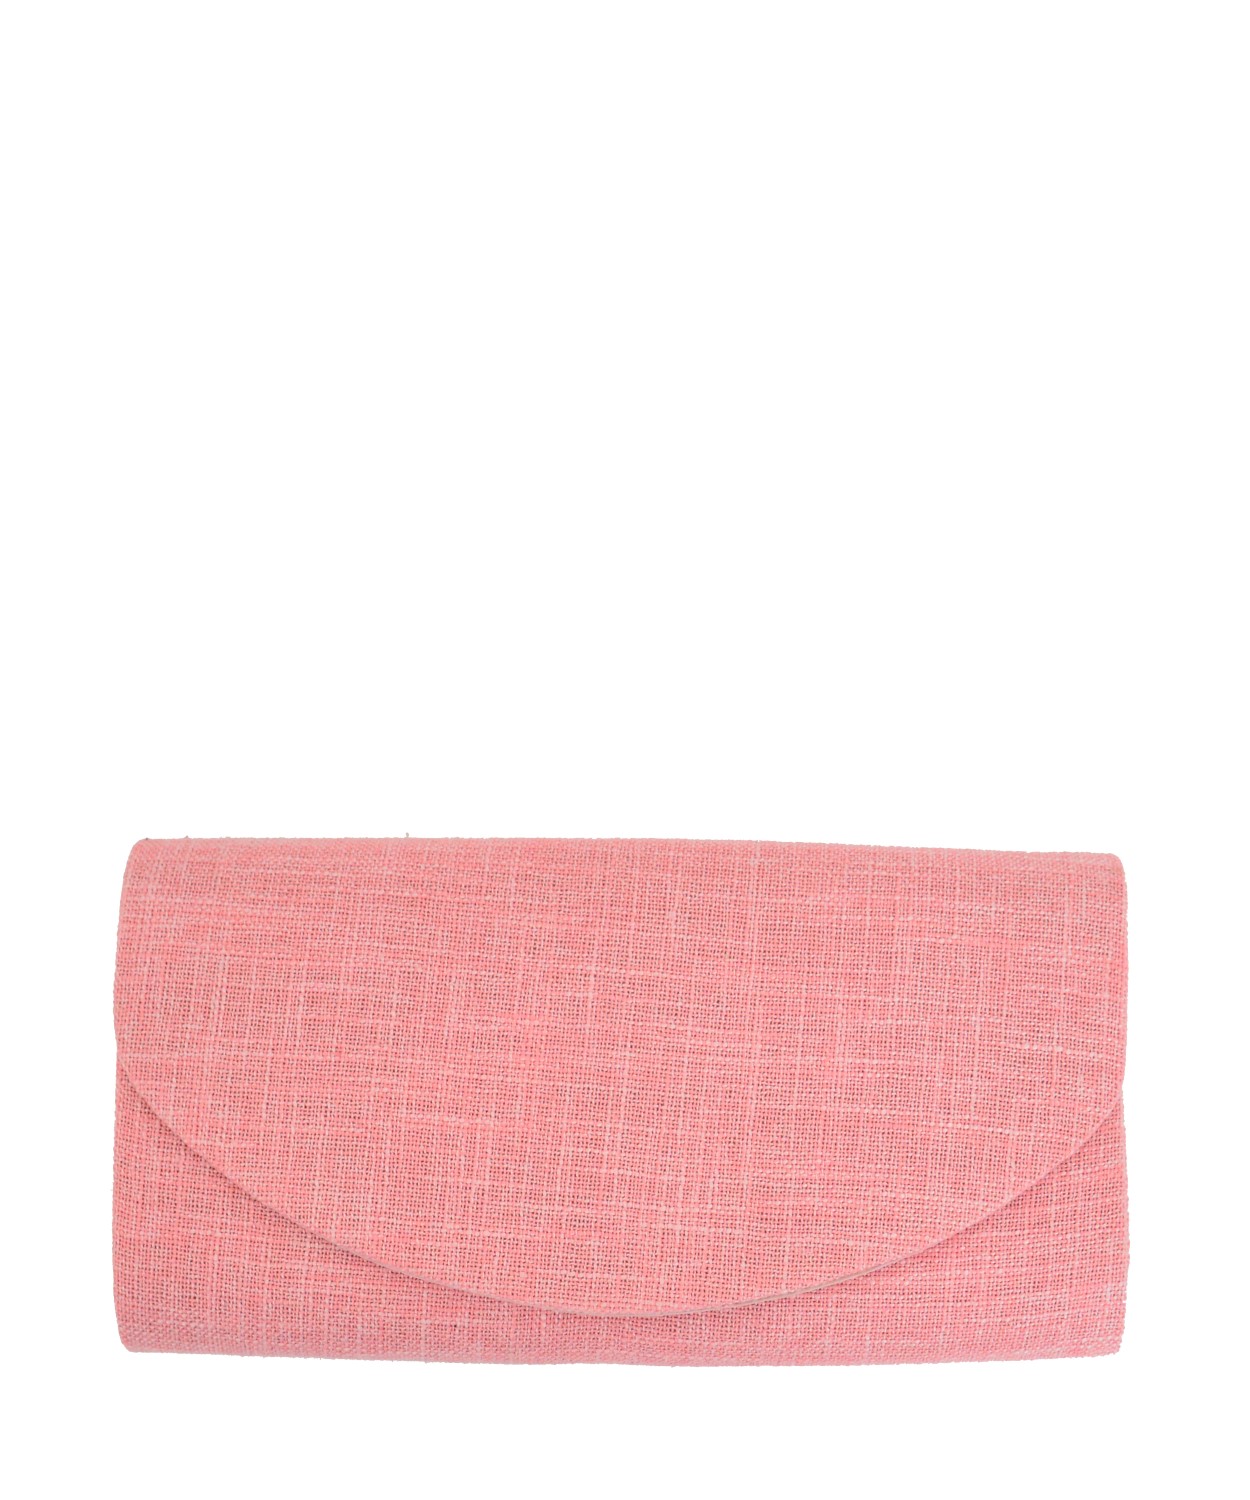 Γυναικείος φάκελος τσάντα ροζ 1705G